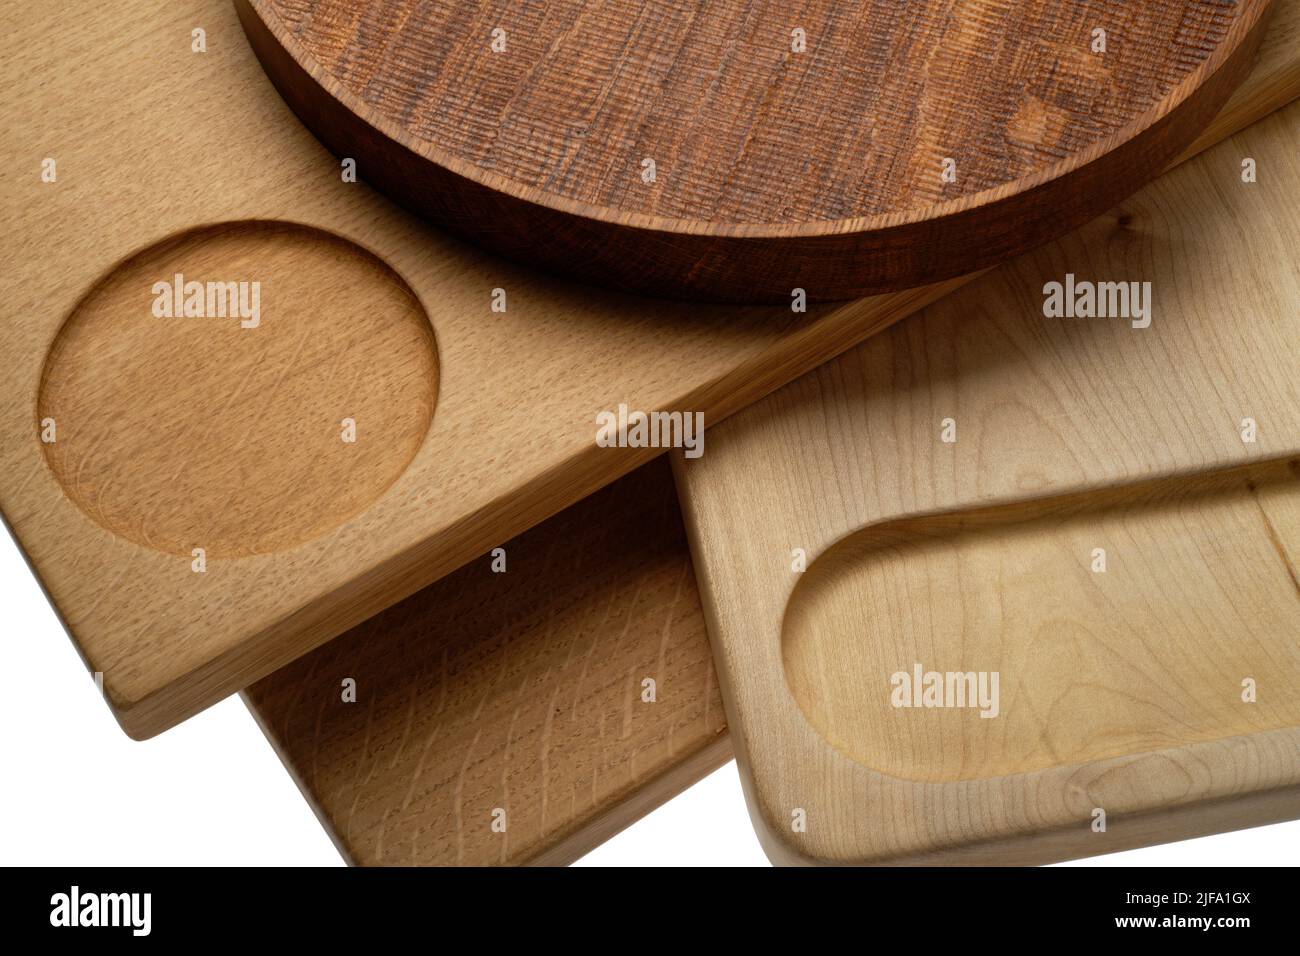 Un grupo de tablas de cortar de madera y una bandeja redonda se encuentran en la cocina moderna. Tablas de preparación de alimentos. Foto de stock